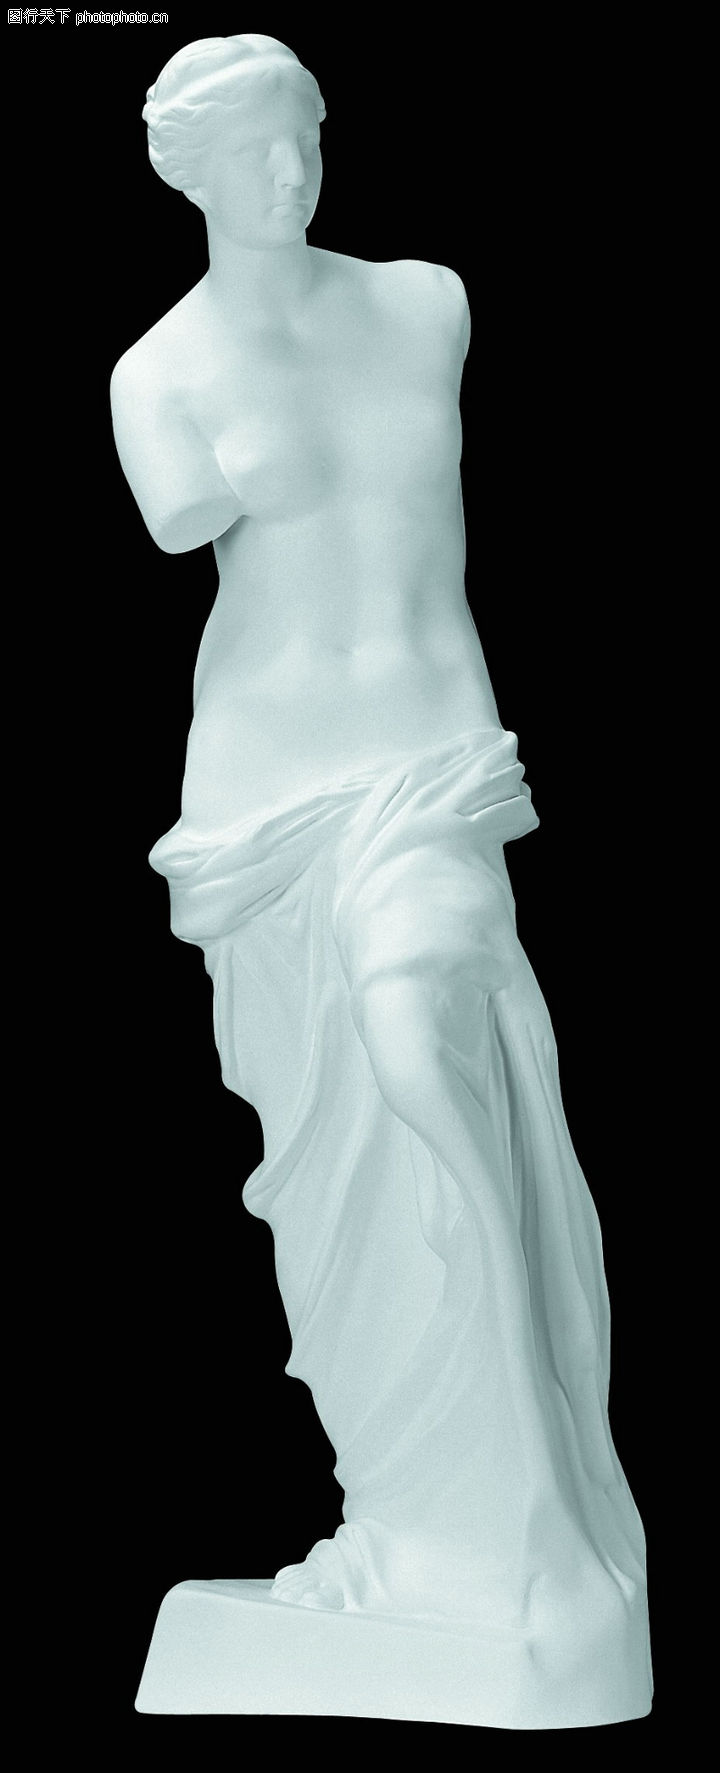 石膏像0075-石膏像图-古典艺术图库-维纳斯 断臂 女郎